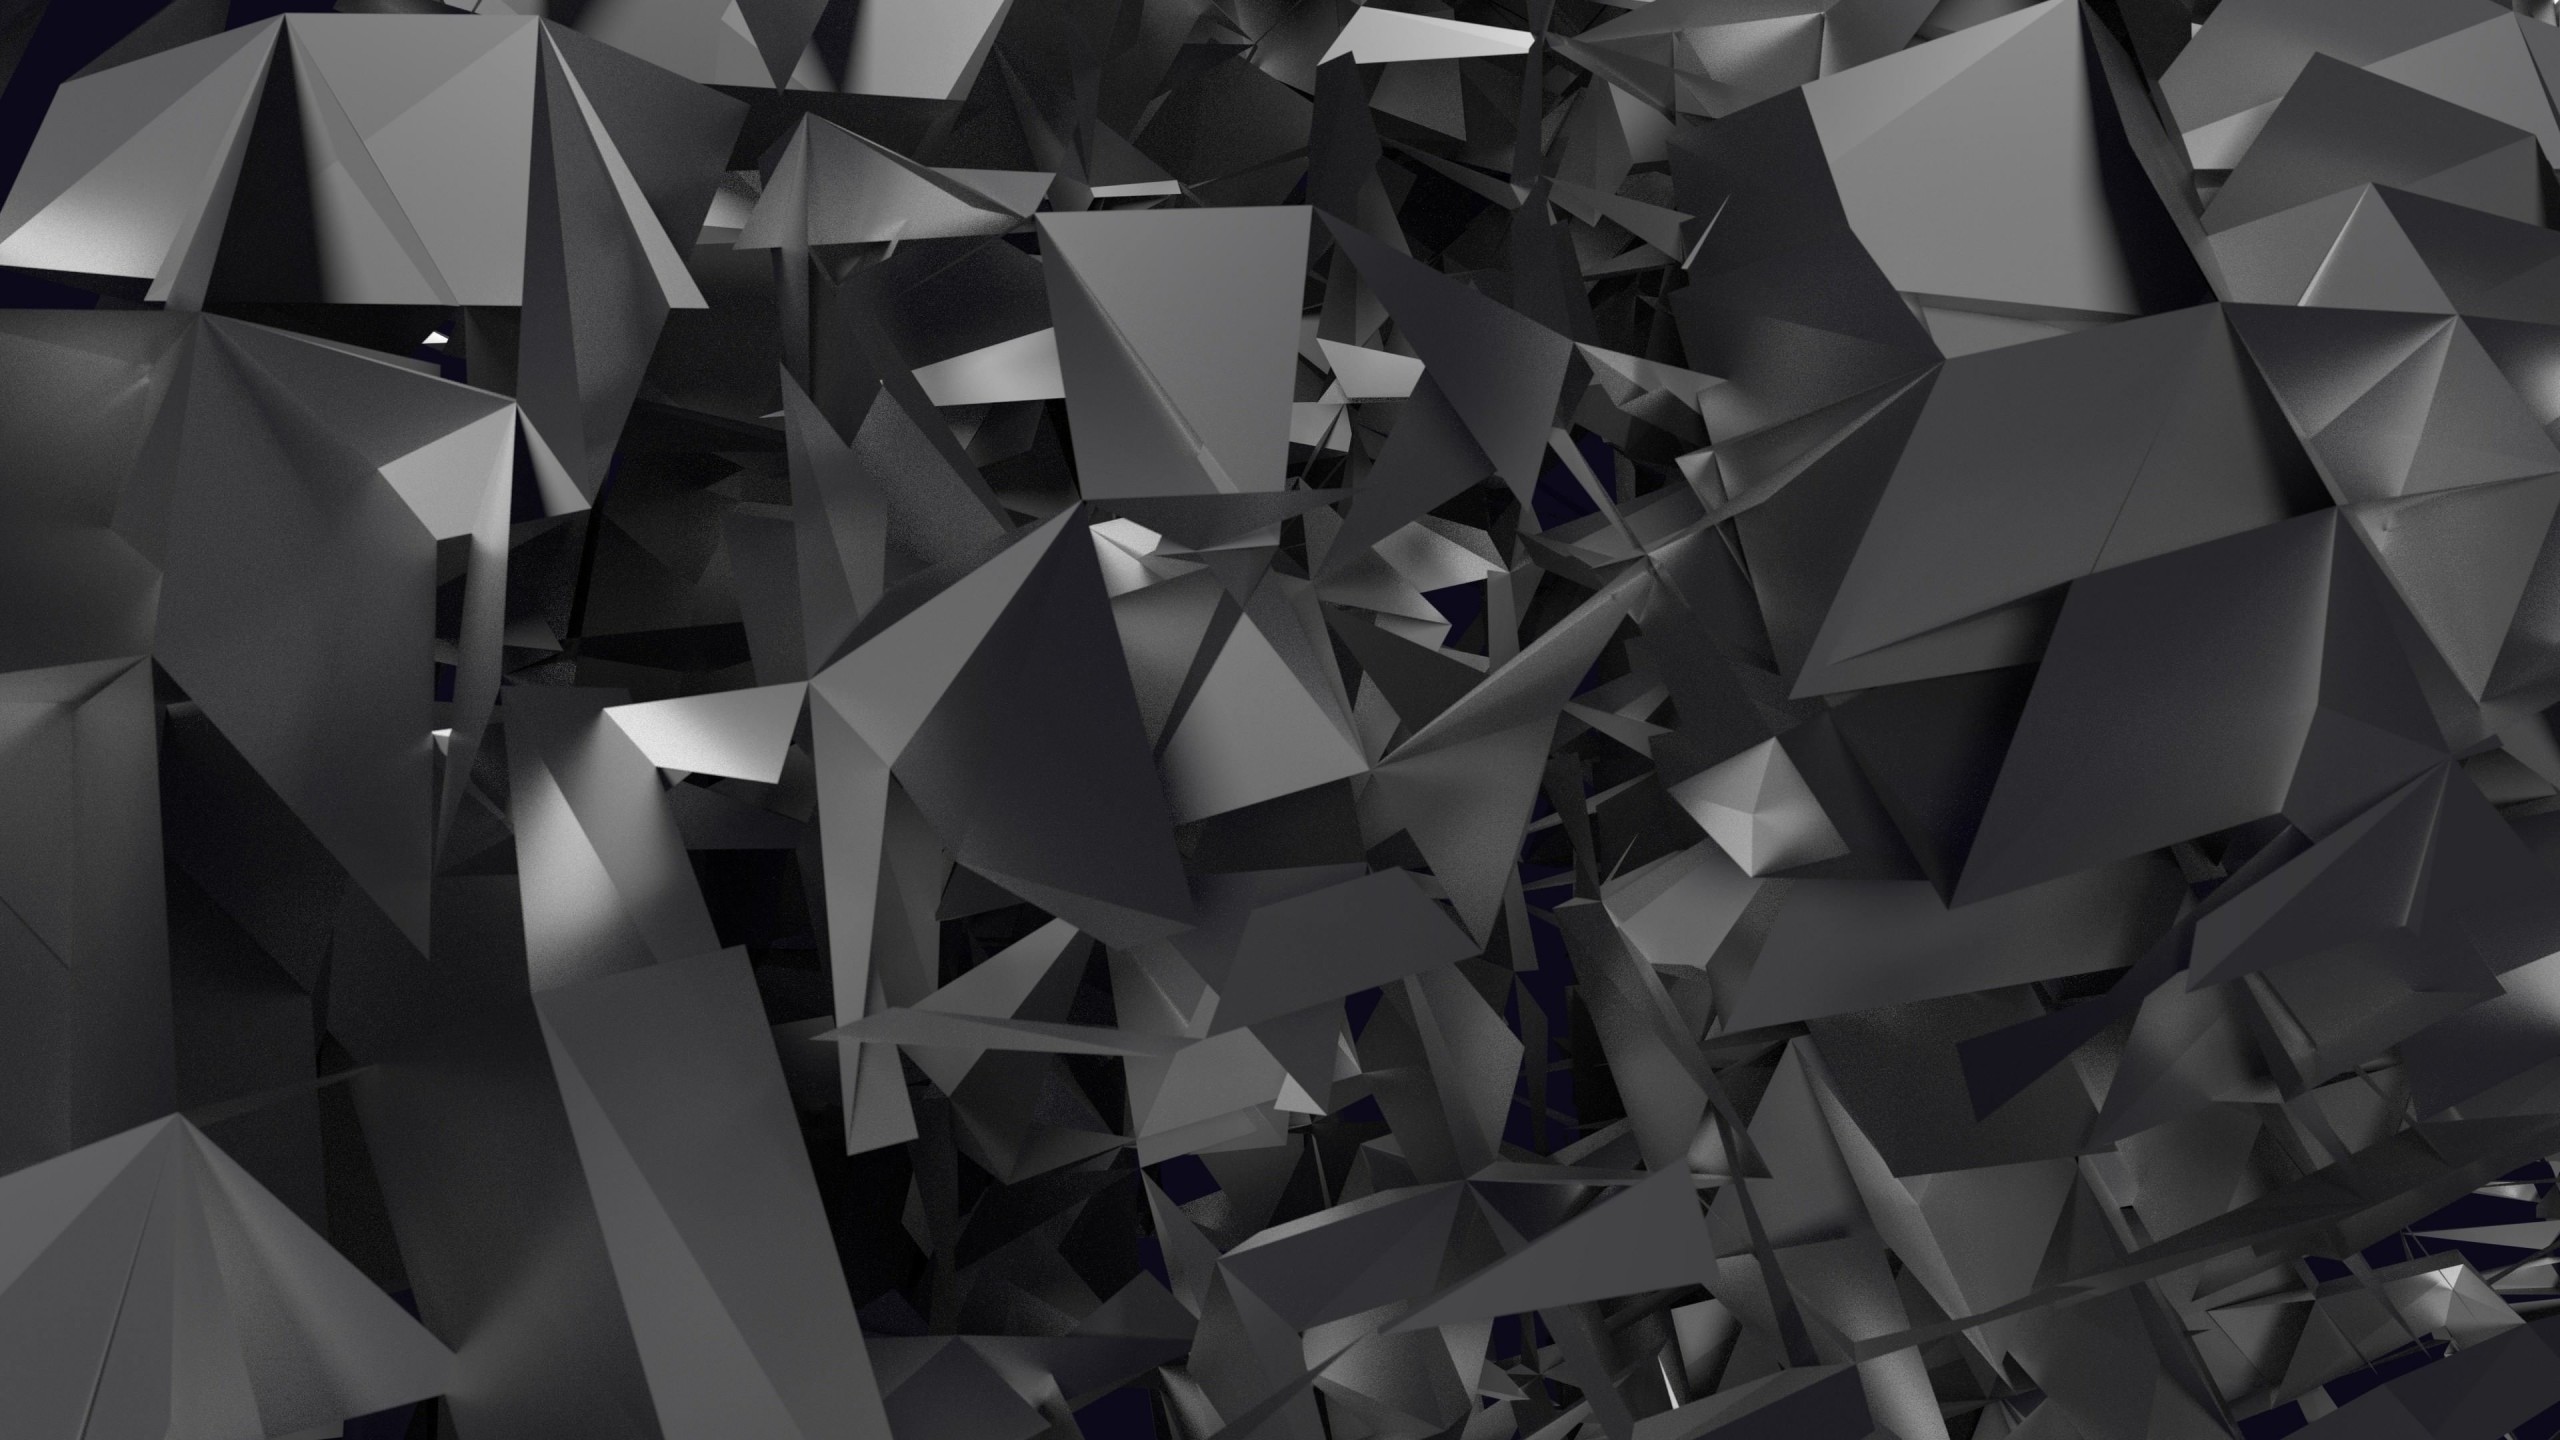 3D Geometry Wallpaper for Social Media YouTube Channel Art